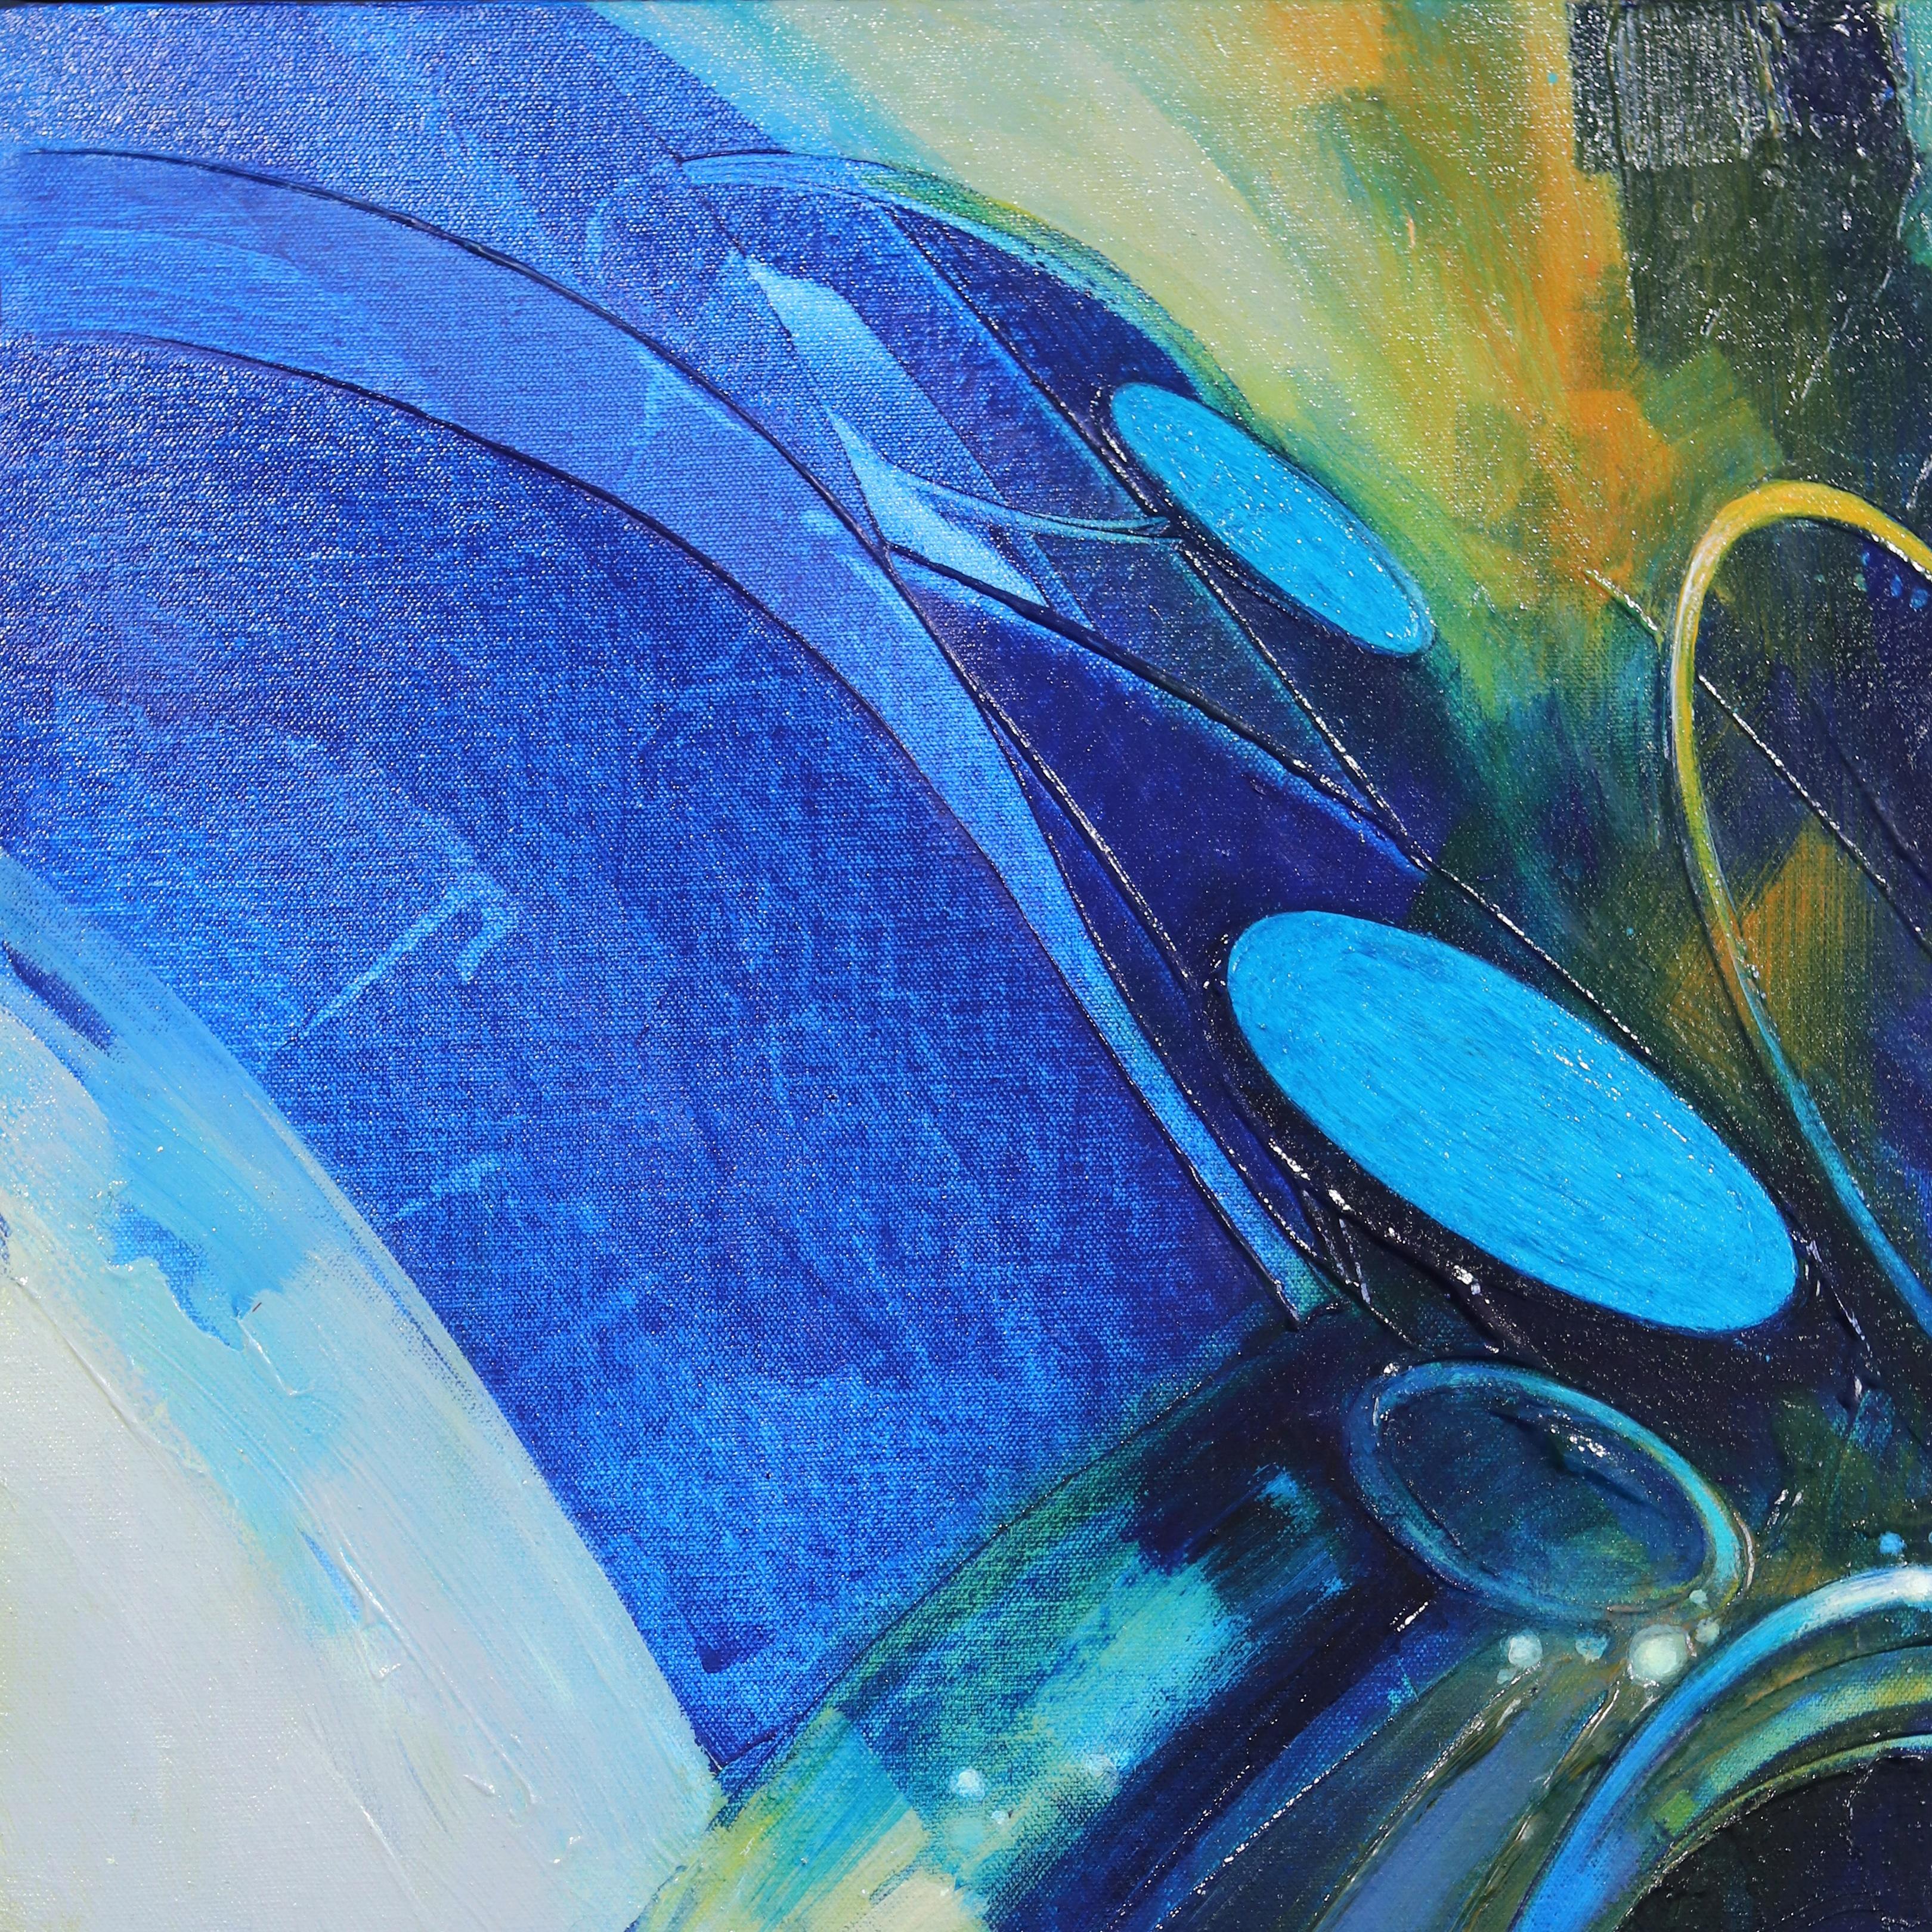 Bewegung in Blau  Blaues abstraktes gerahmtes Gemälde (Abstrakter Expressionismus), Painting, von Paul Kirley